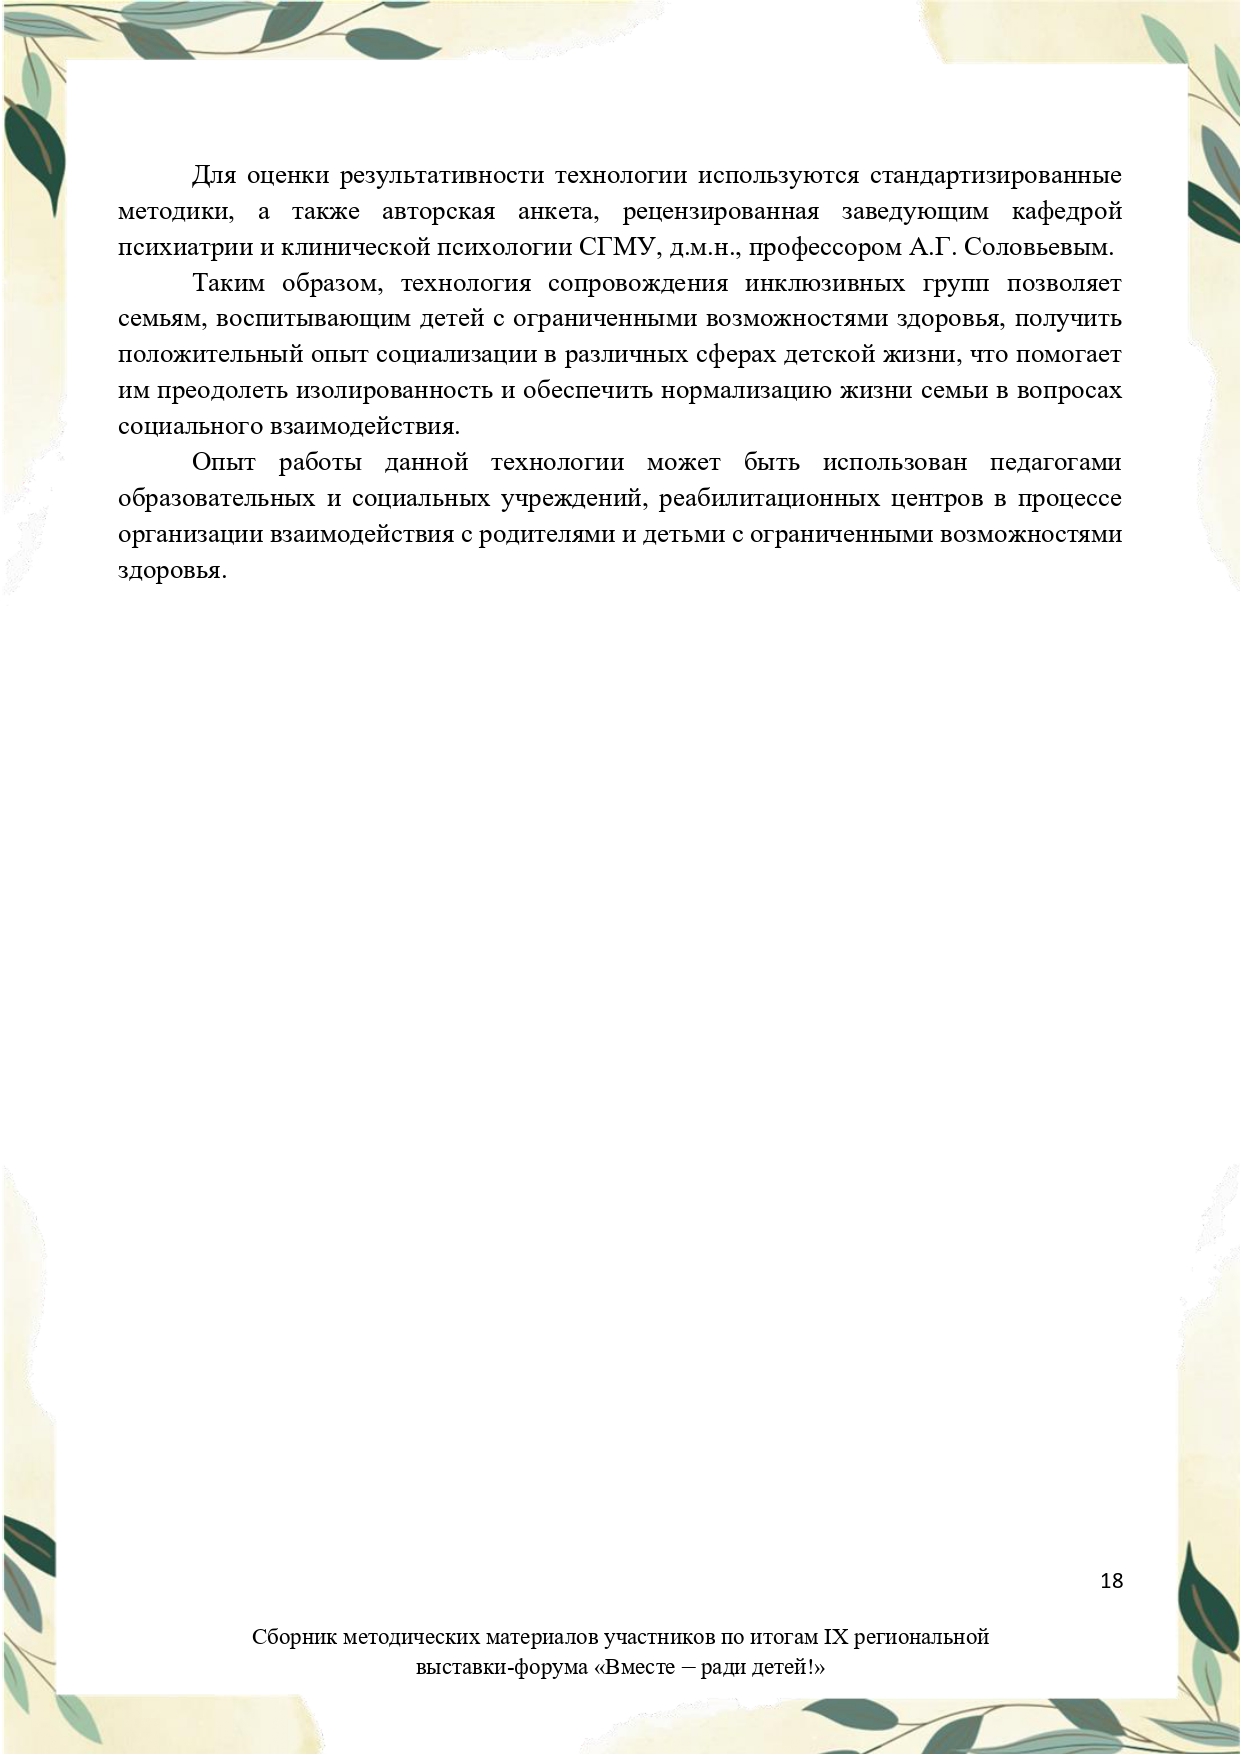 Sbornik_metodicheskikh_materialov_uchastnikov_IX_regionalnoy_vystavki-foruma_Vmeste__radi_detey_33__2023_page-0018